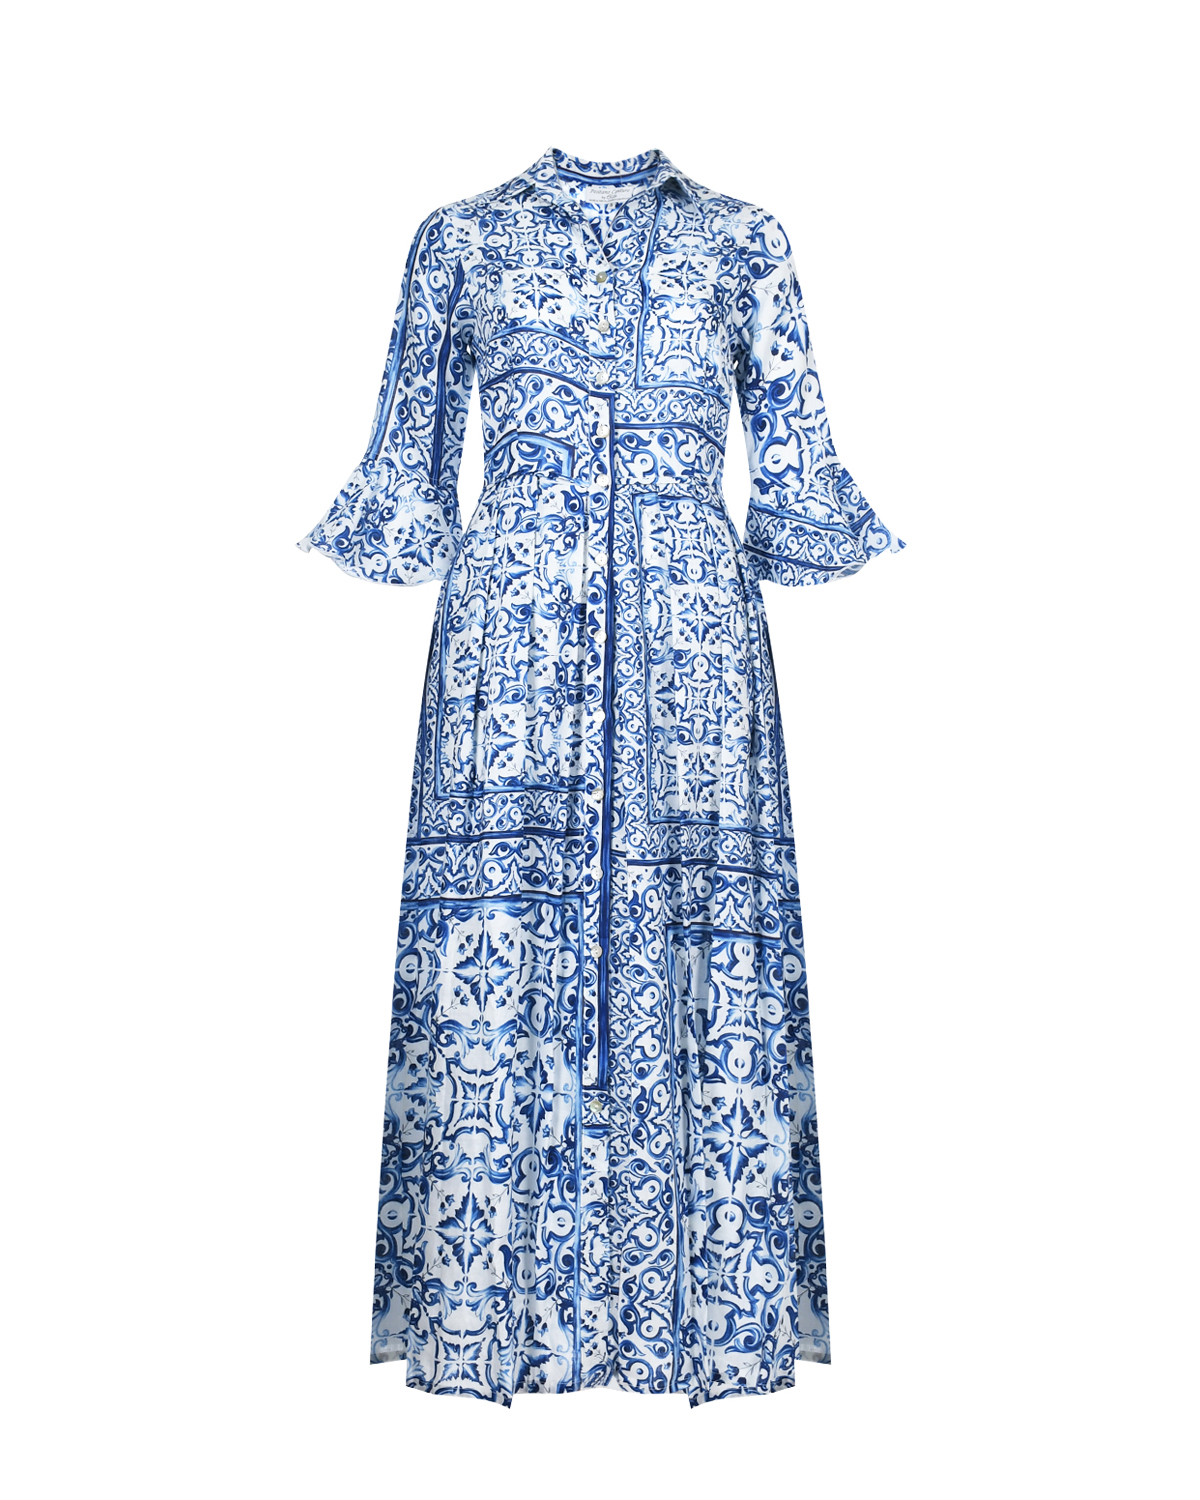 Платье льняное миди со сплошным принтом "Майолика" Positano Couture